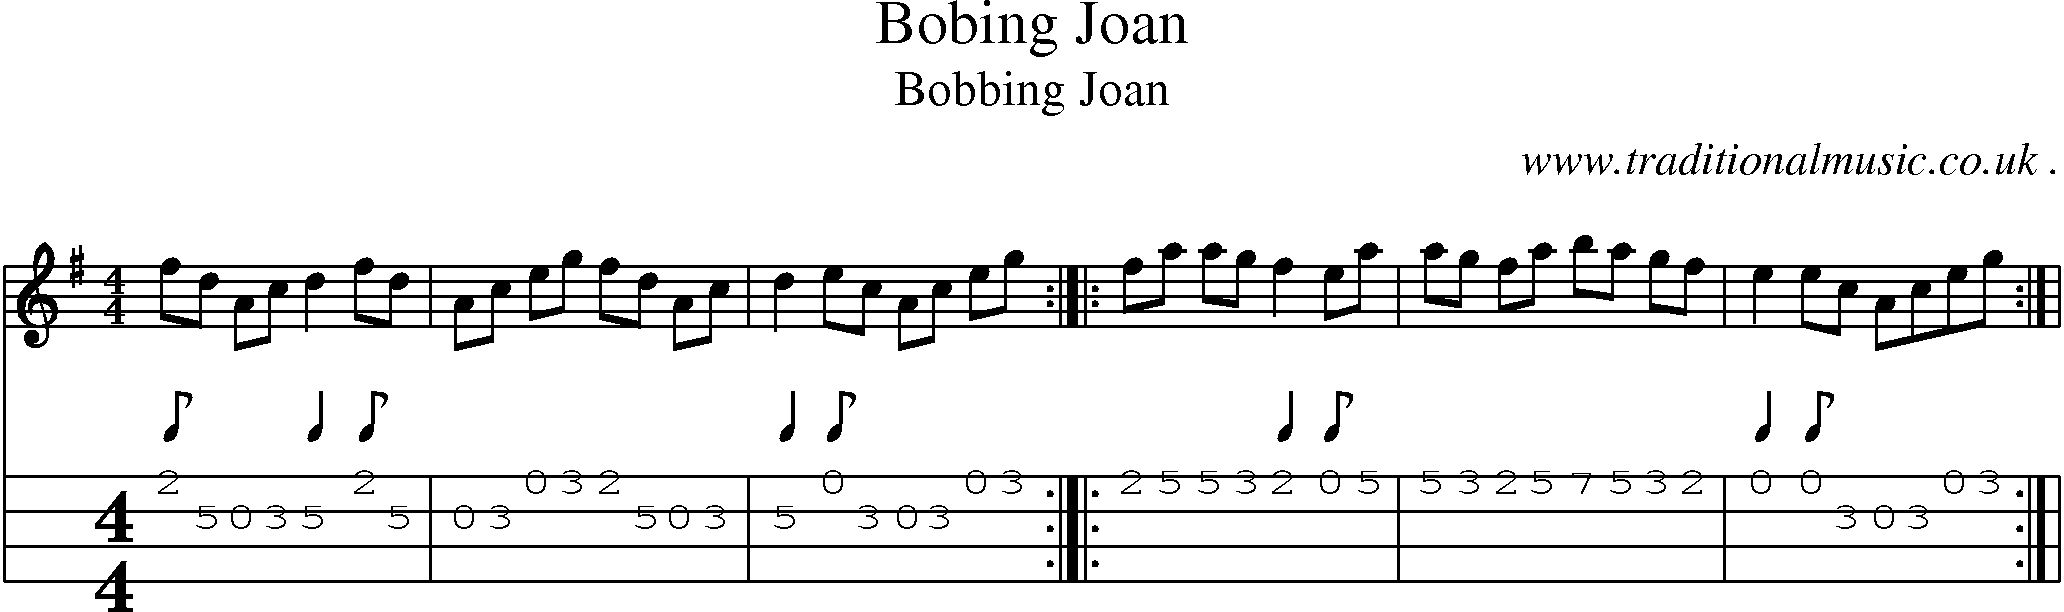 Sheet-Music and Mandolin Tabs for Bobing Joan